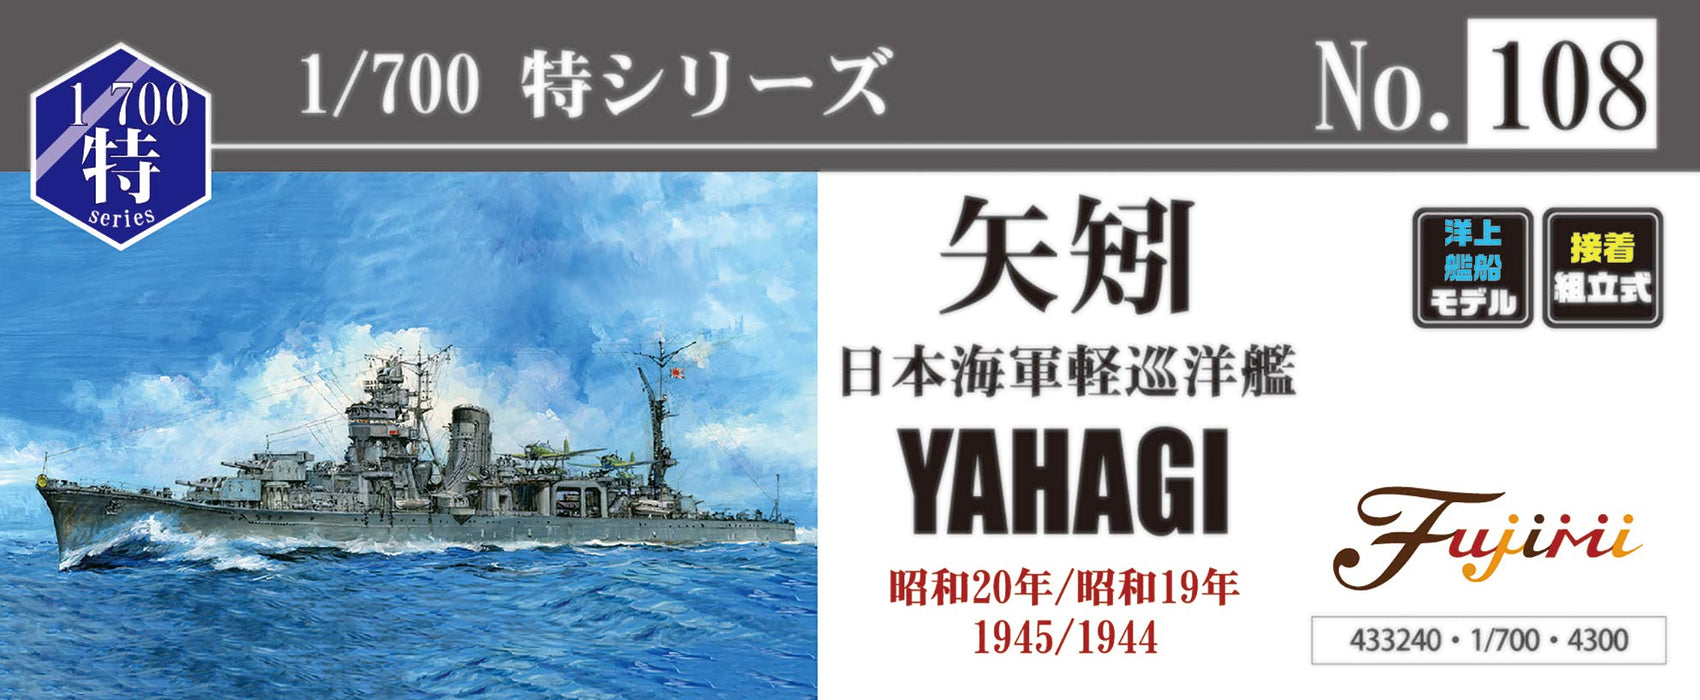 Fujimi Model 1/700 Special Series No.108 Japanese Navy Light Cruiser Yahagi (Showa 20/Showa 19) Special-108